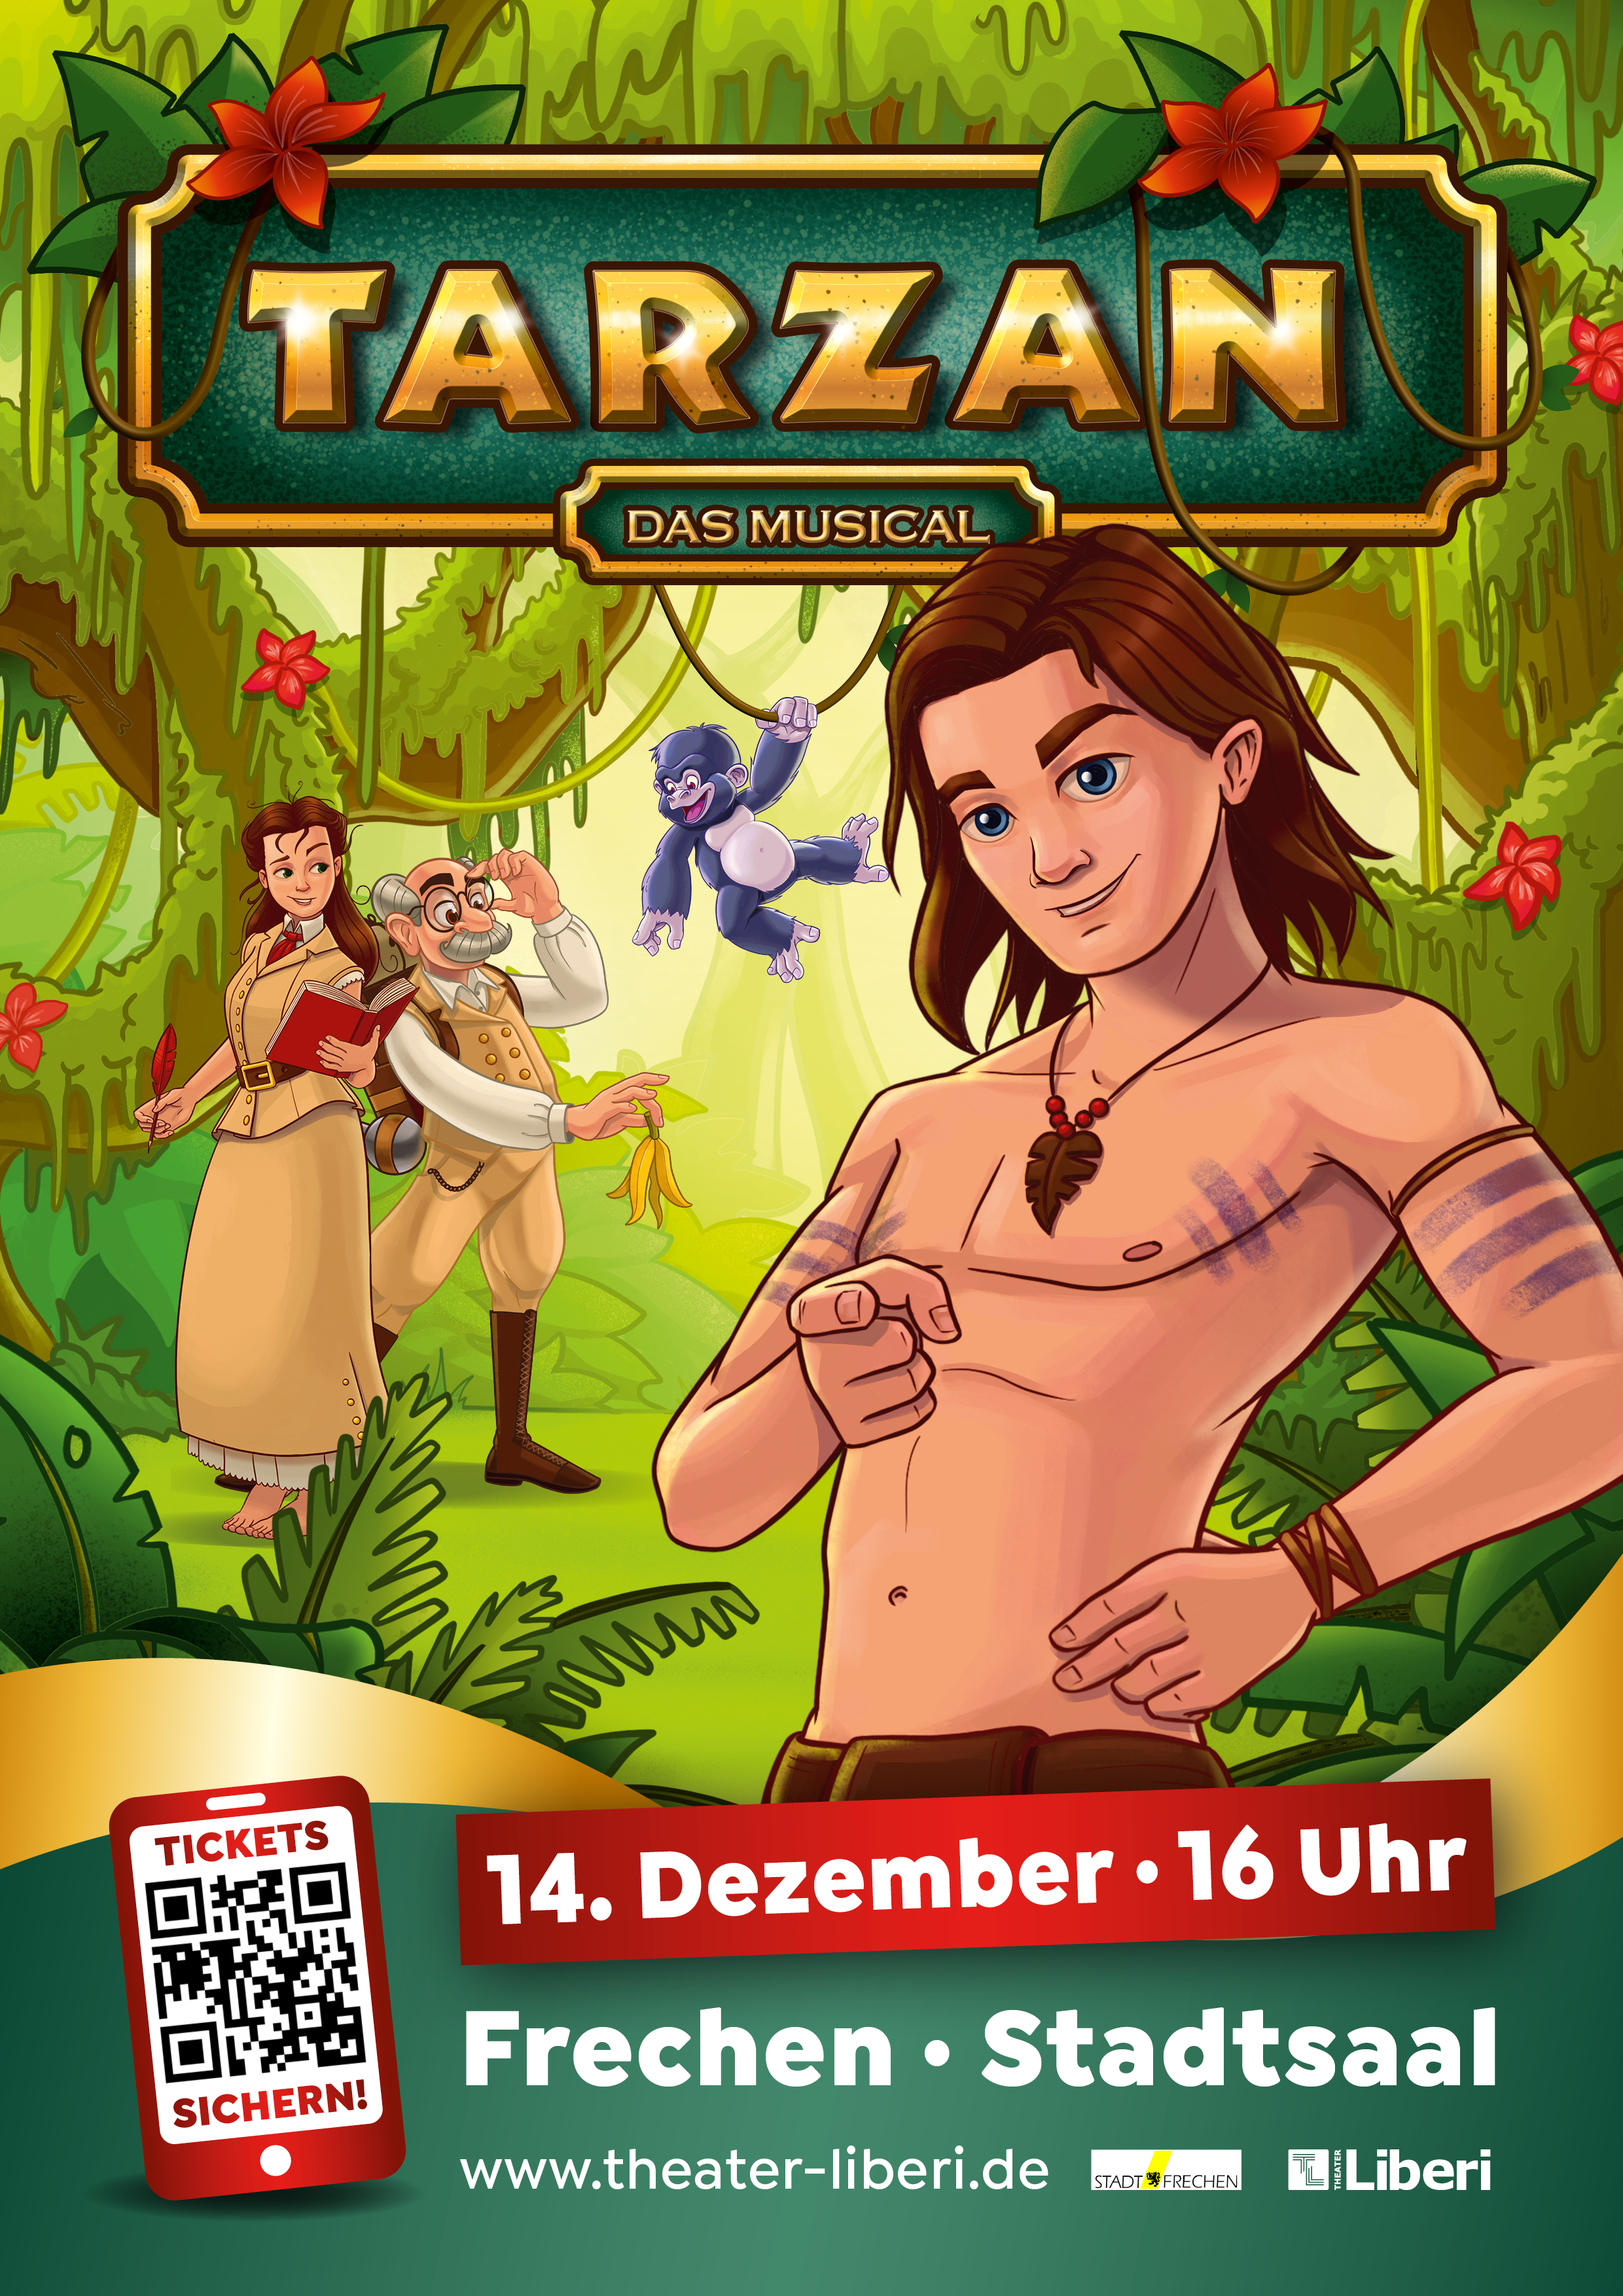 Bild: Tarzan / Frechen